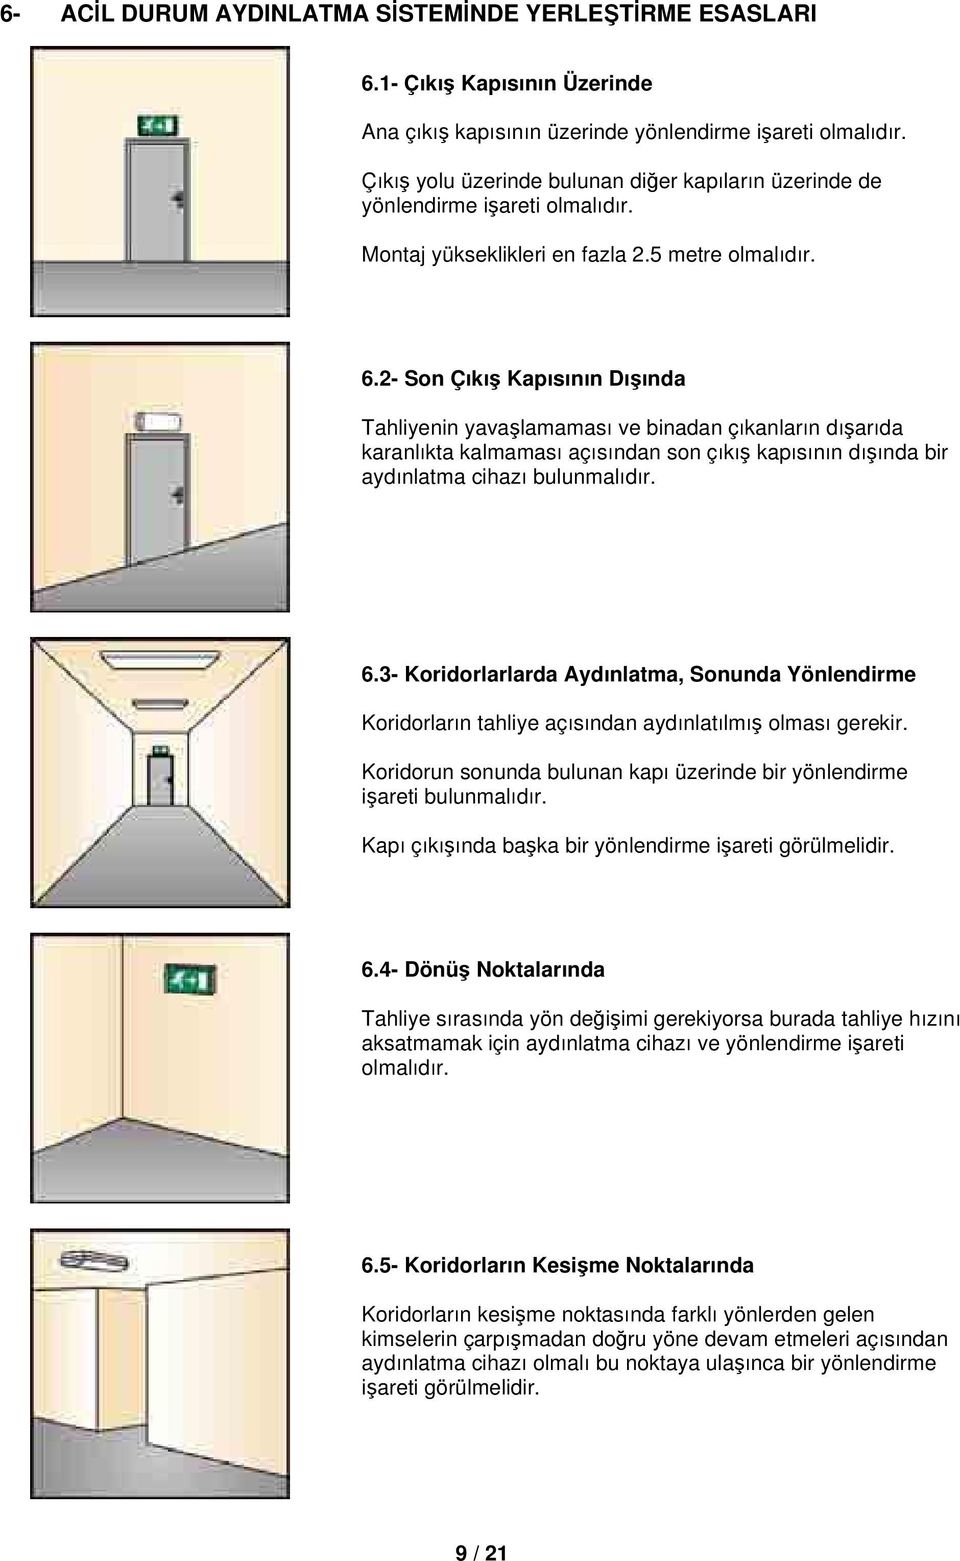 2- Son Çıkış Kapısının Dışında Tahliyenin yavaşlamaması ve binadan çıkanların dışarıda karanlıkta kalmaması açısından son çıkış kapısının dışında bir aydınlatma cihazı bulunmalıdır. 6.